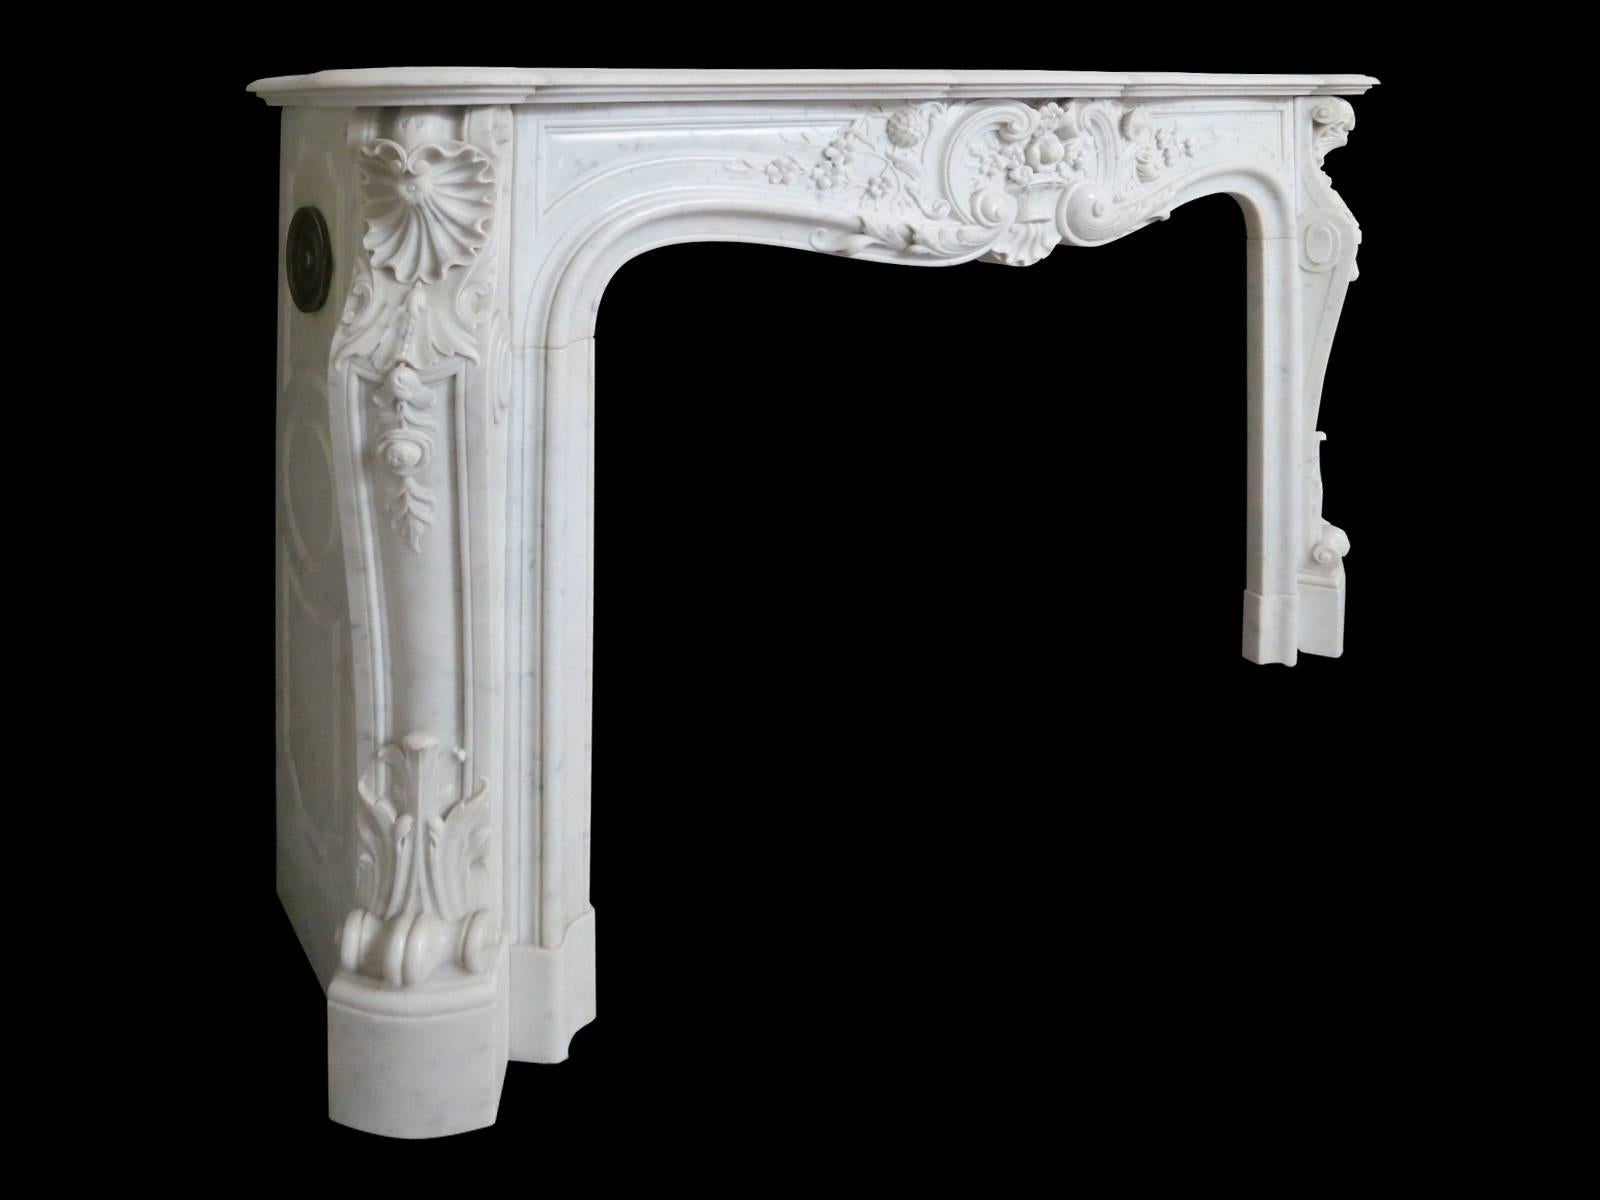 Une cheminée de style Louis XV bien proportionnée et finement sculptée en marbre de Carrare italien. Les jambages à panneaux sculptés avec des acanthes raides en bas, des fleurs descendantes et des feuillages surmontés de rinceaux et de coquilles en